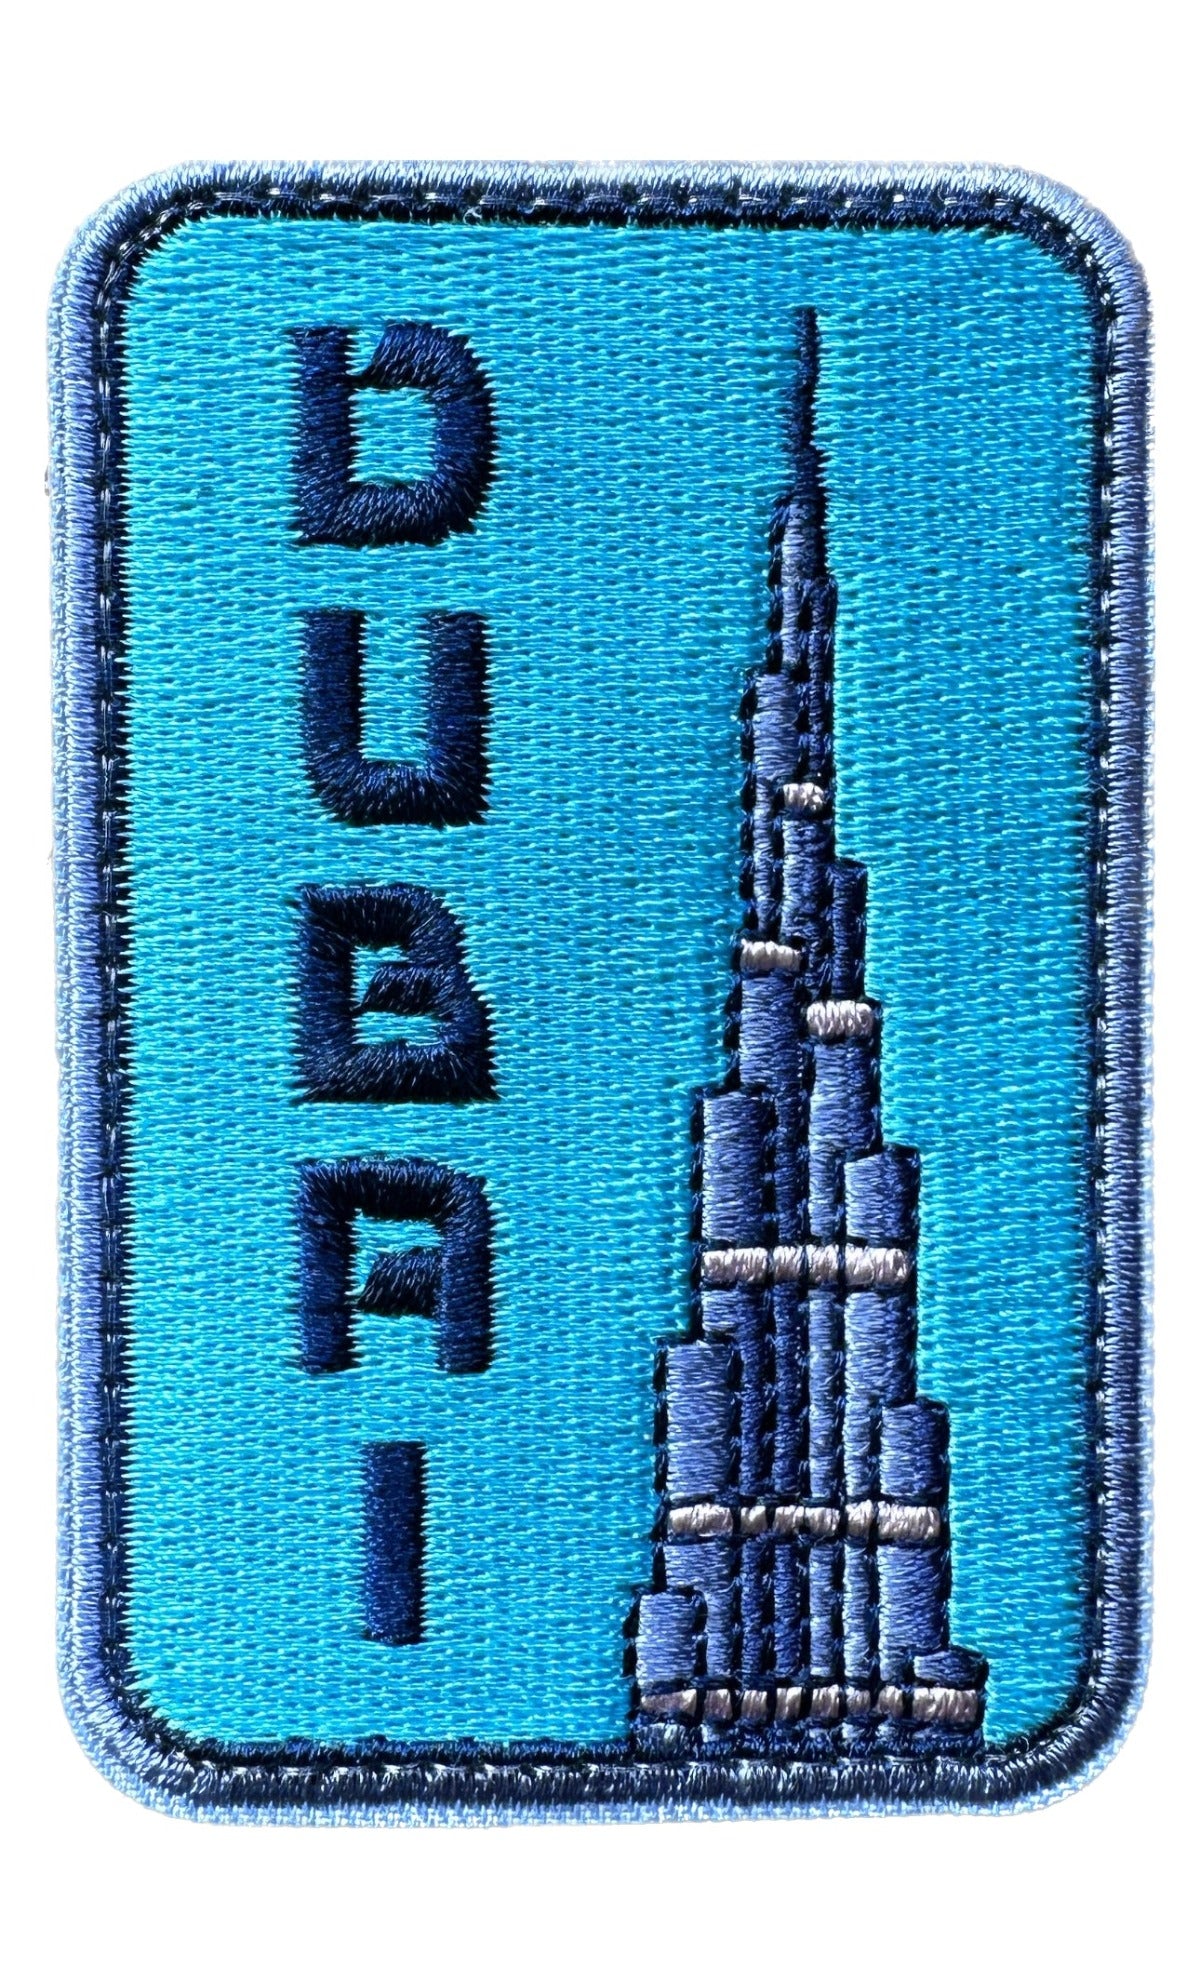 Dubai Patch